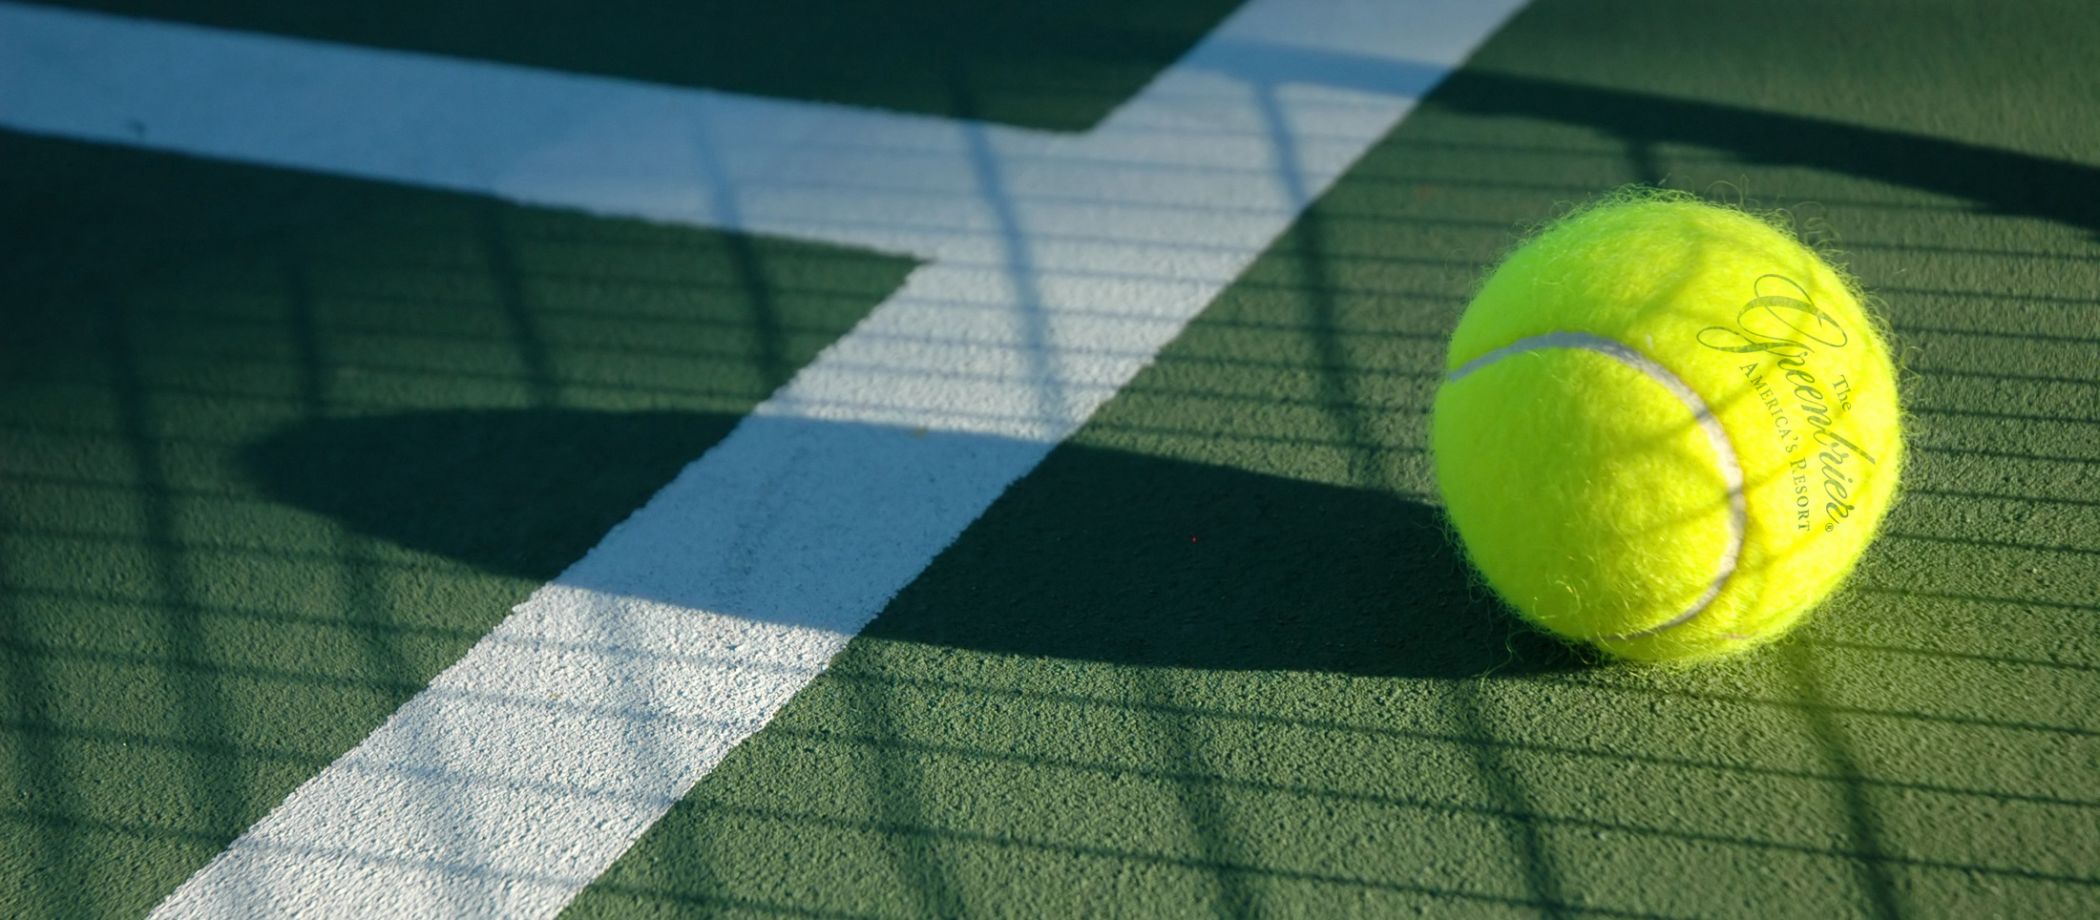 tennis-ball-on-tennis-court